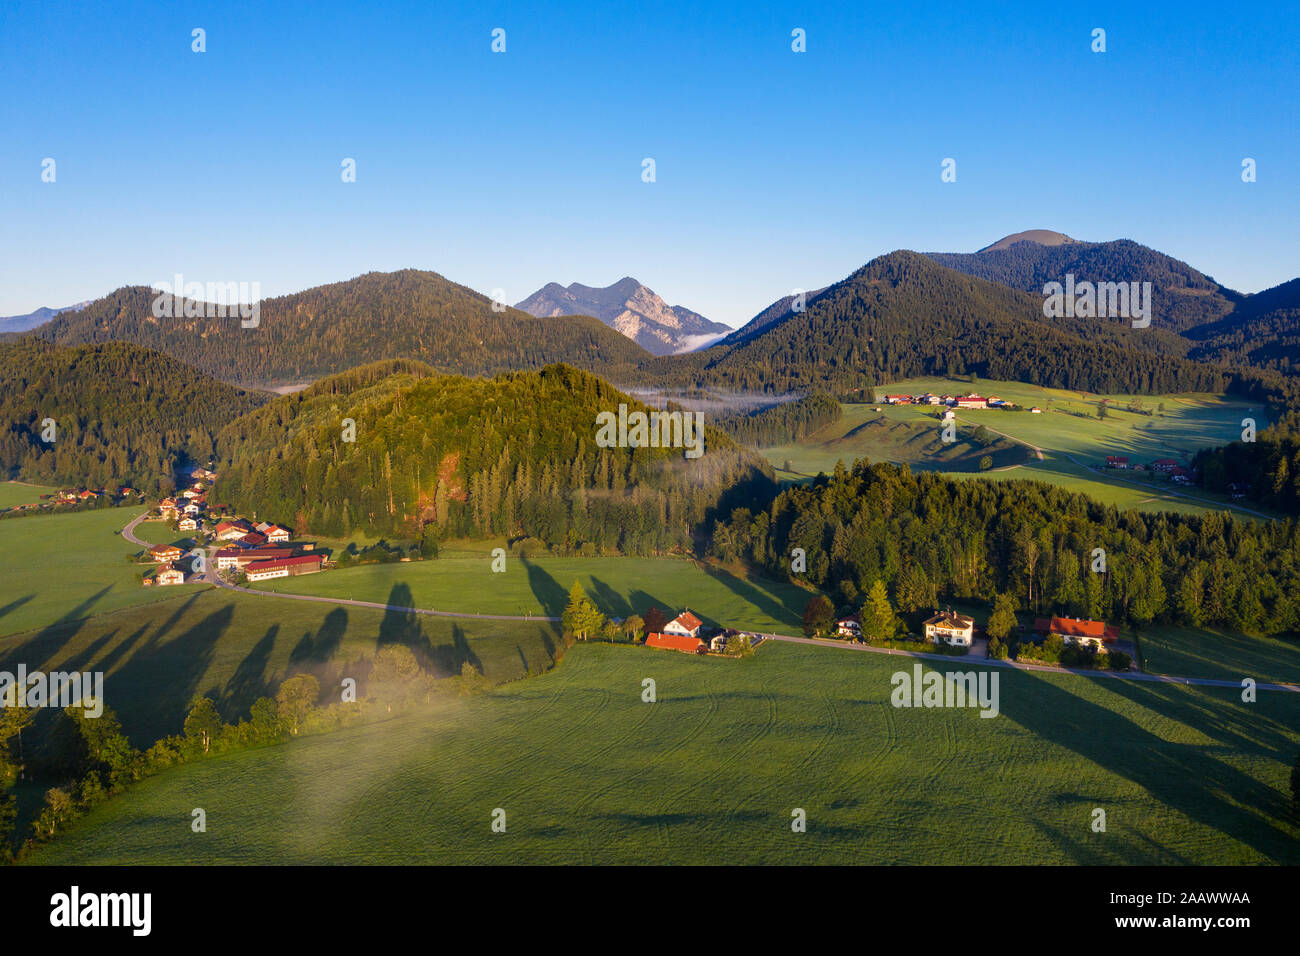 Germany, Bavaria, Upper Bavaria, Isarwinkel, Jachenau, rural landscape at sunrise Stock Photo